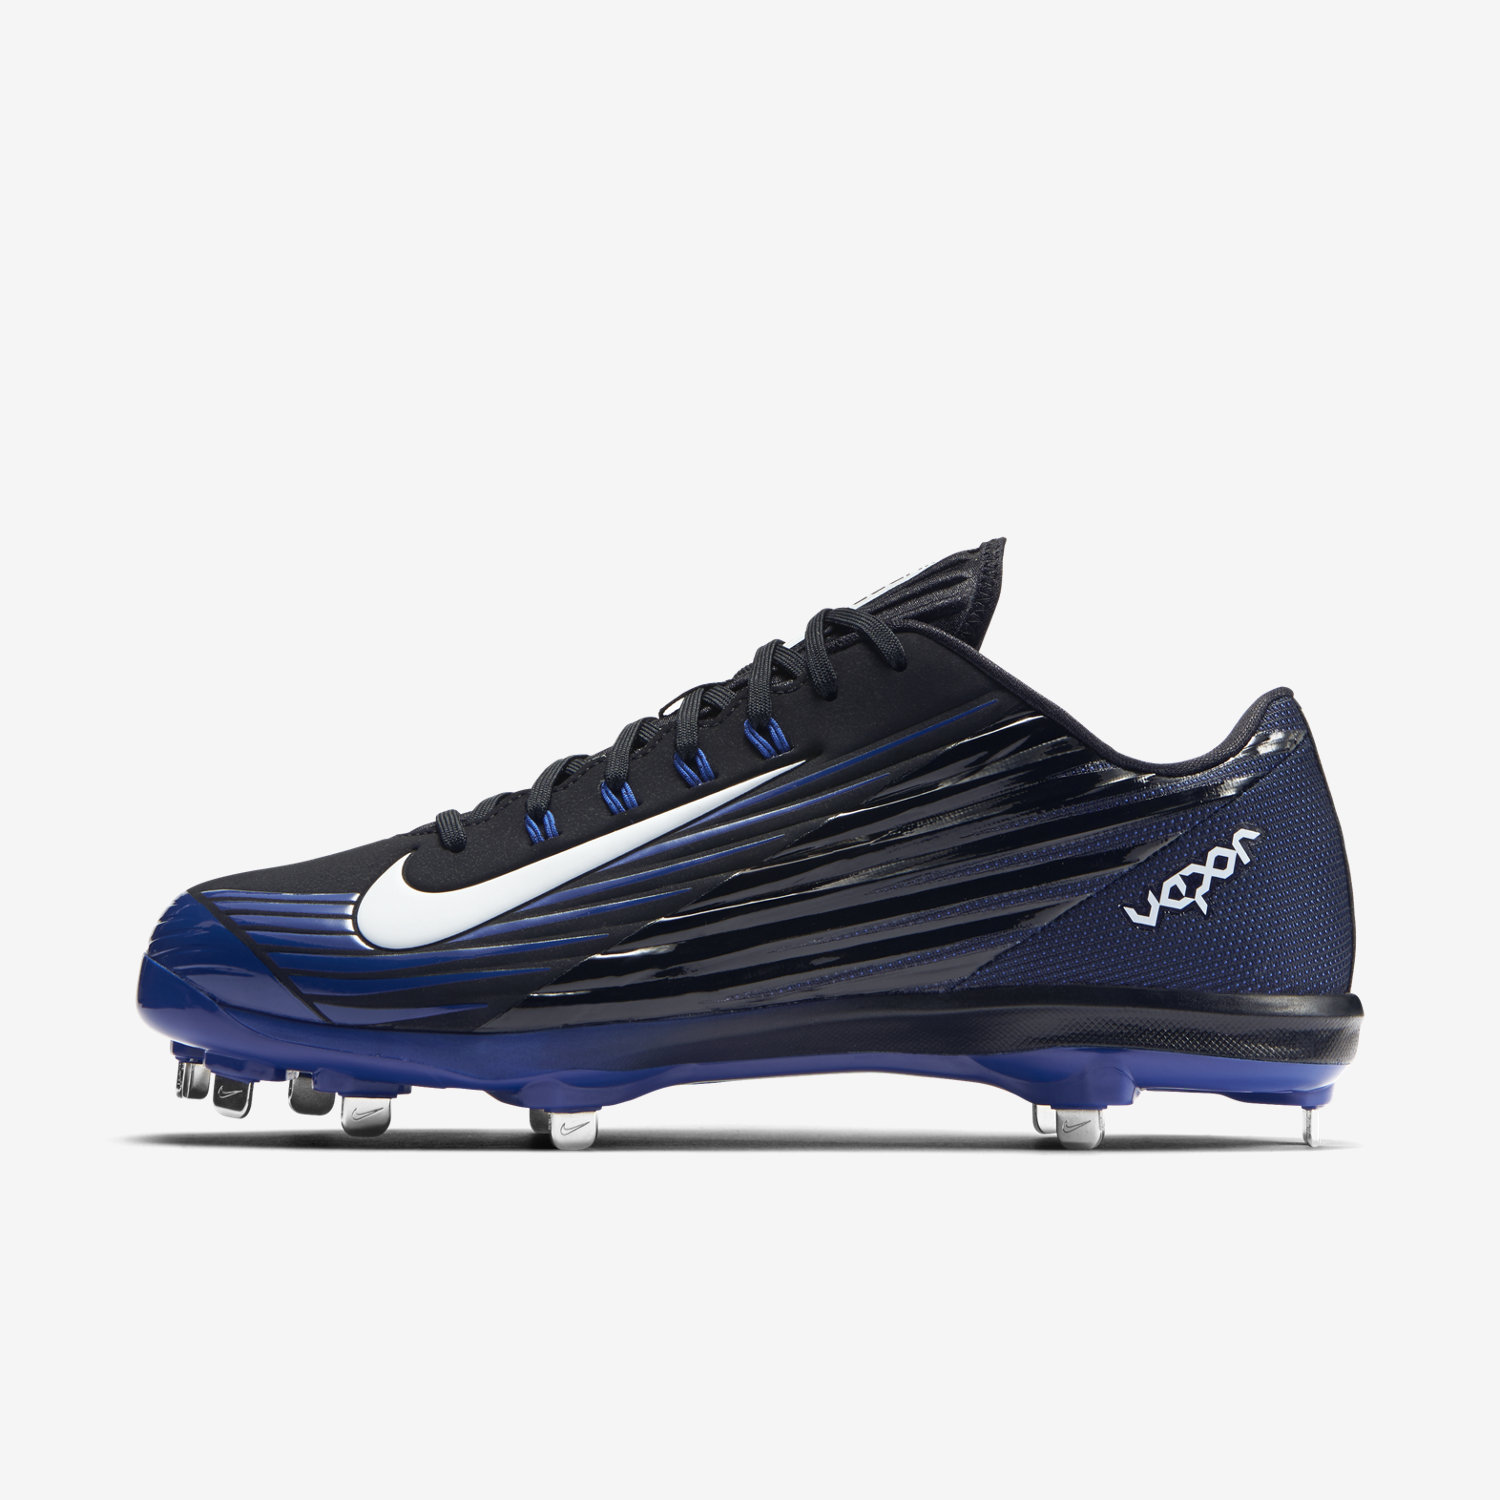 μπέιζμπολ παπουτσια ανδρικα Nike Lunar Vapor Pro μαυρα/μπλε/ασπρα 85256347QI